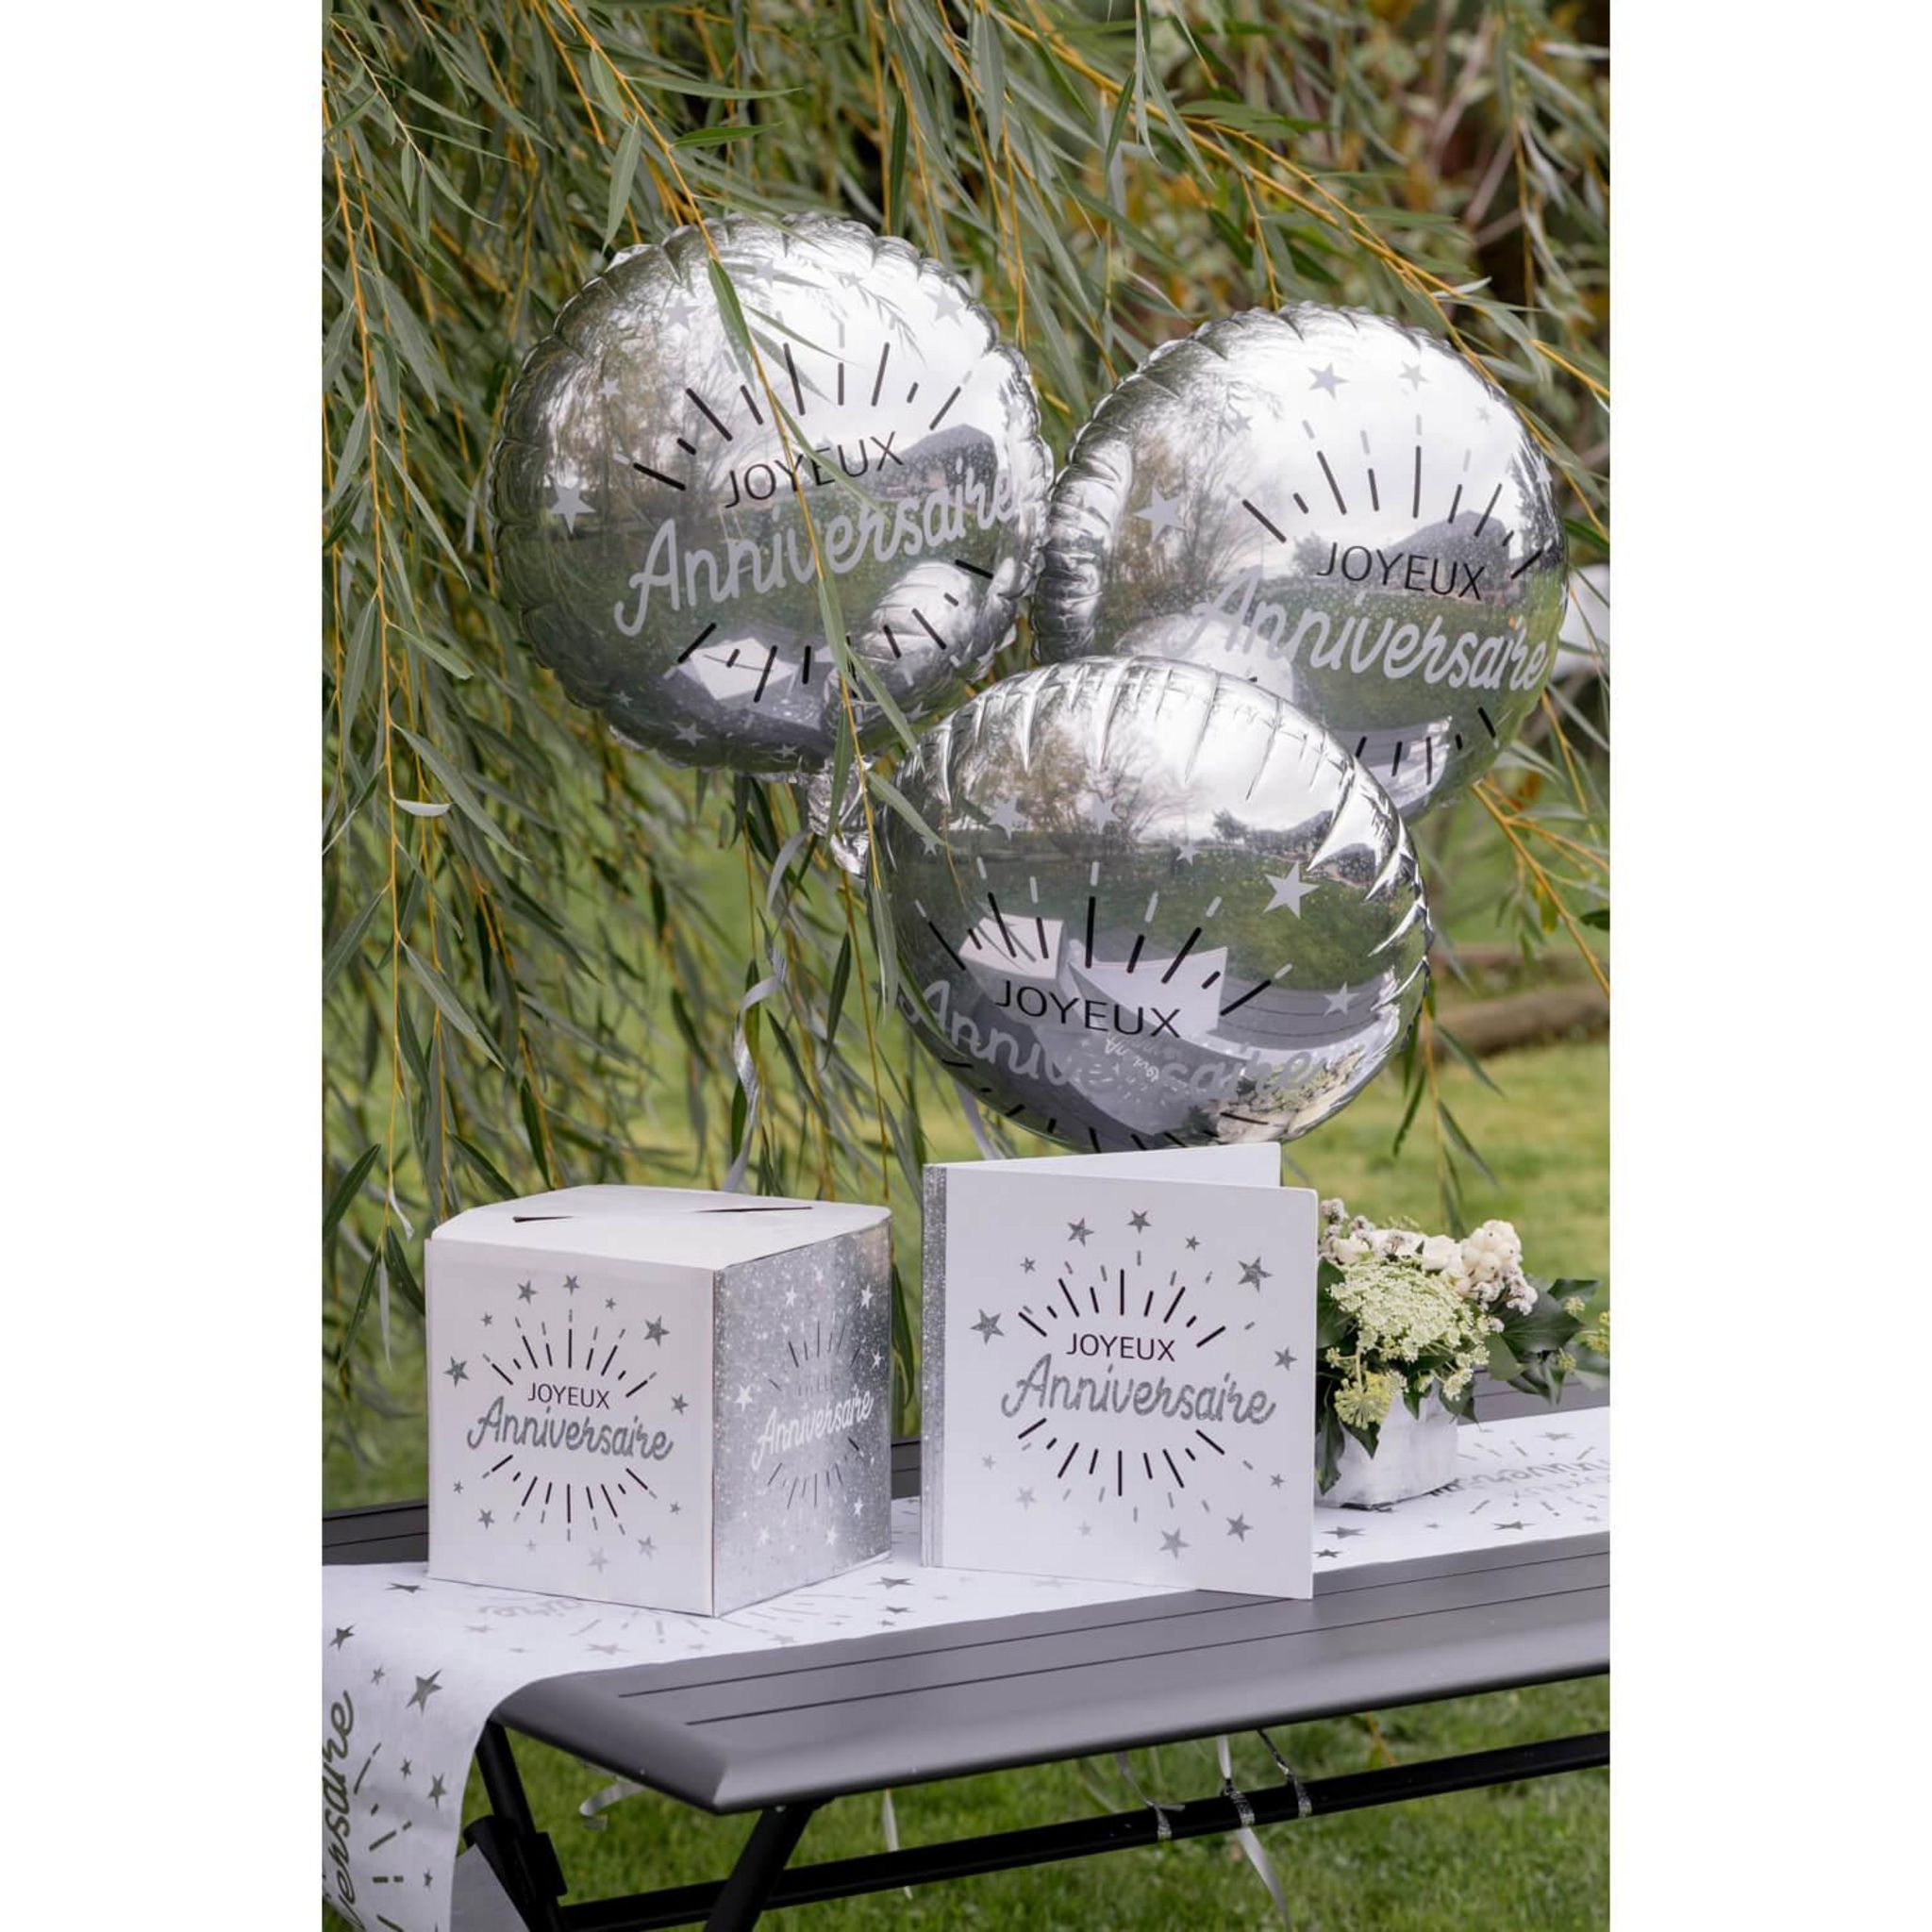 Ballon en aluminium rond Pastille argent - 45 cm